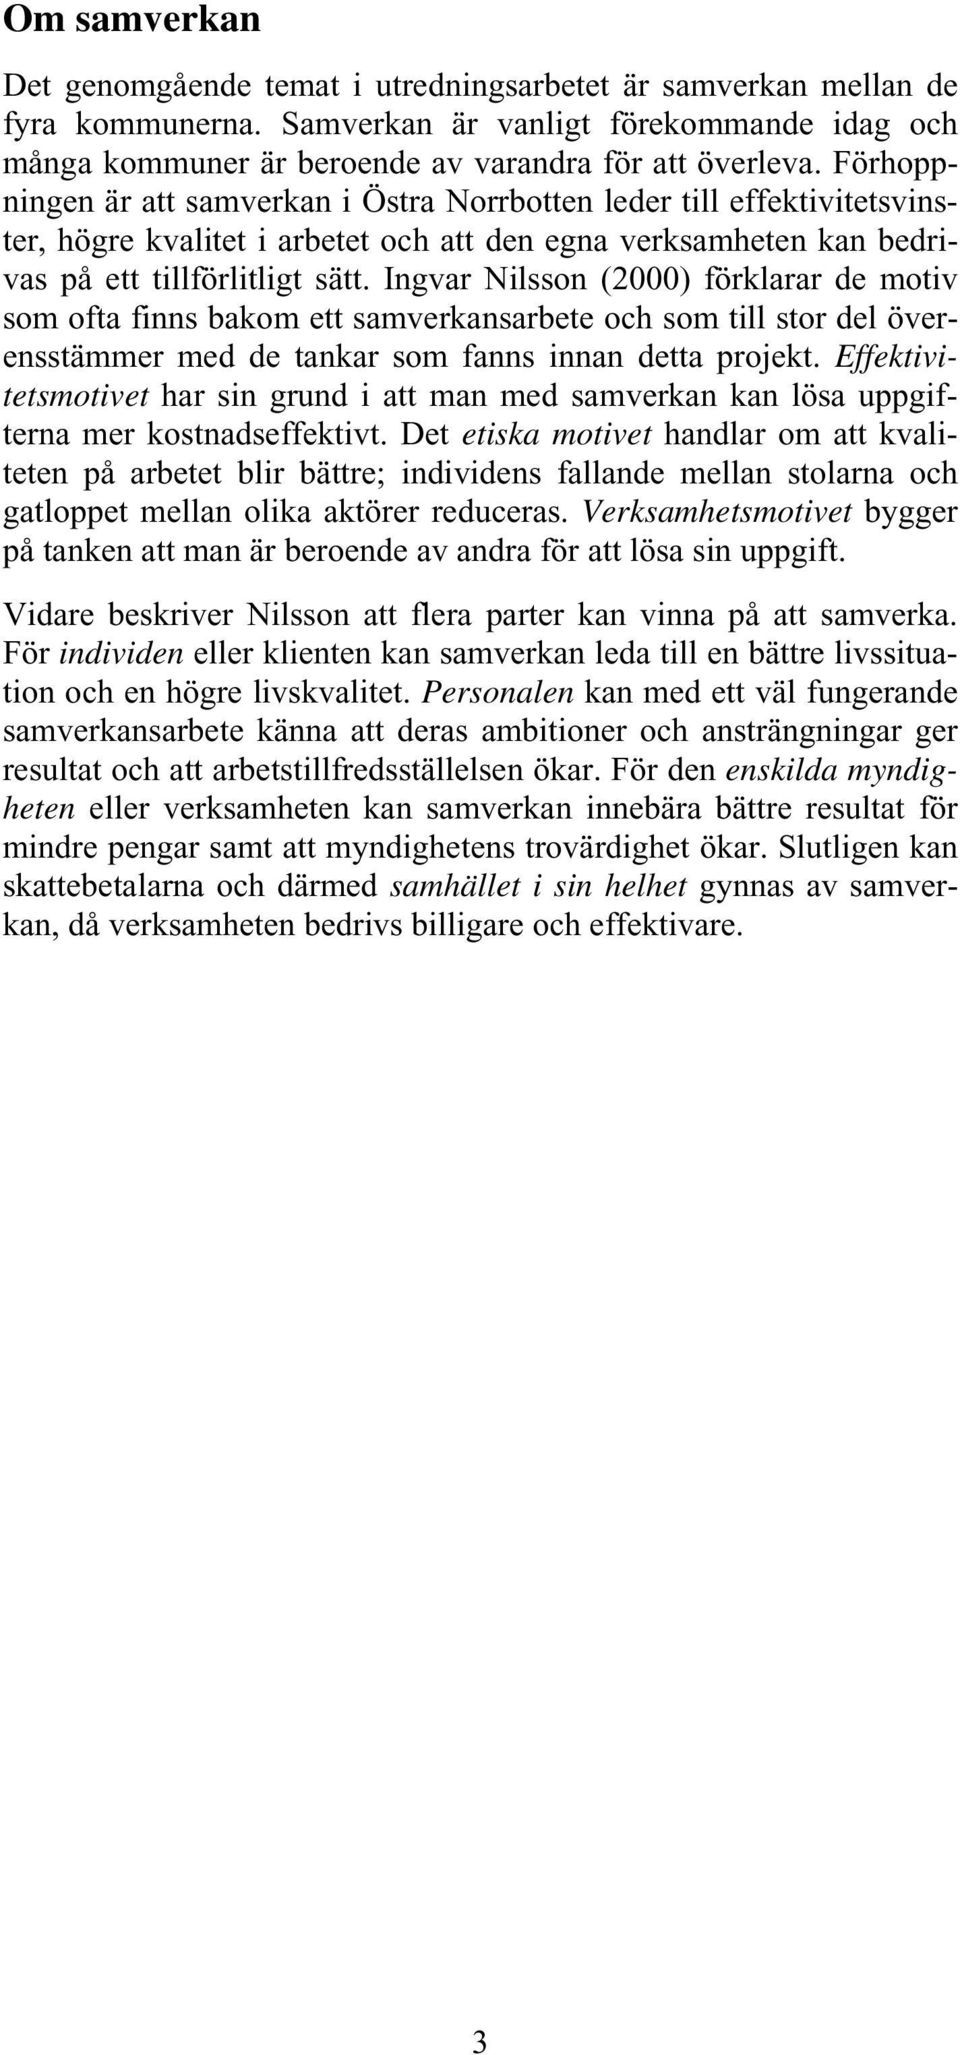 Ingvar Nilsson (2000) förklarar de motiv som ofta finns bakom ett samverkansarbete och som till stor del överensstämmer med de tankar som fanns innan detta projekt.